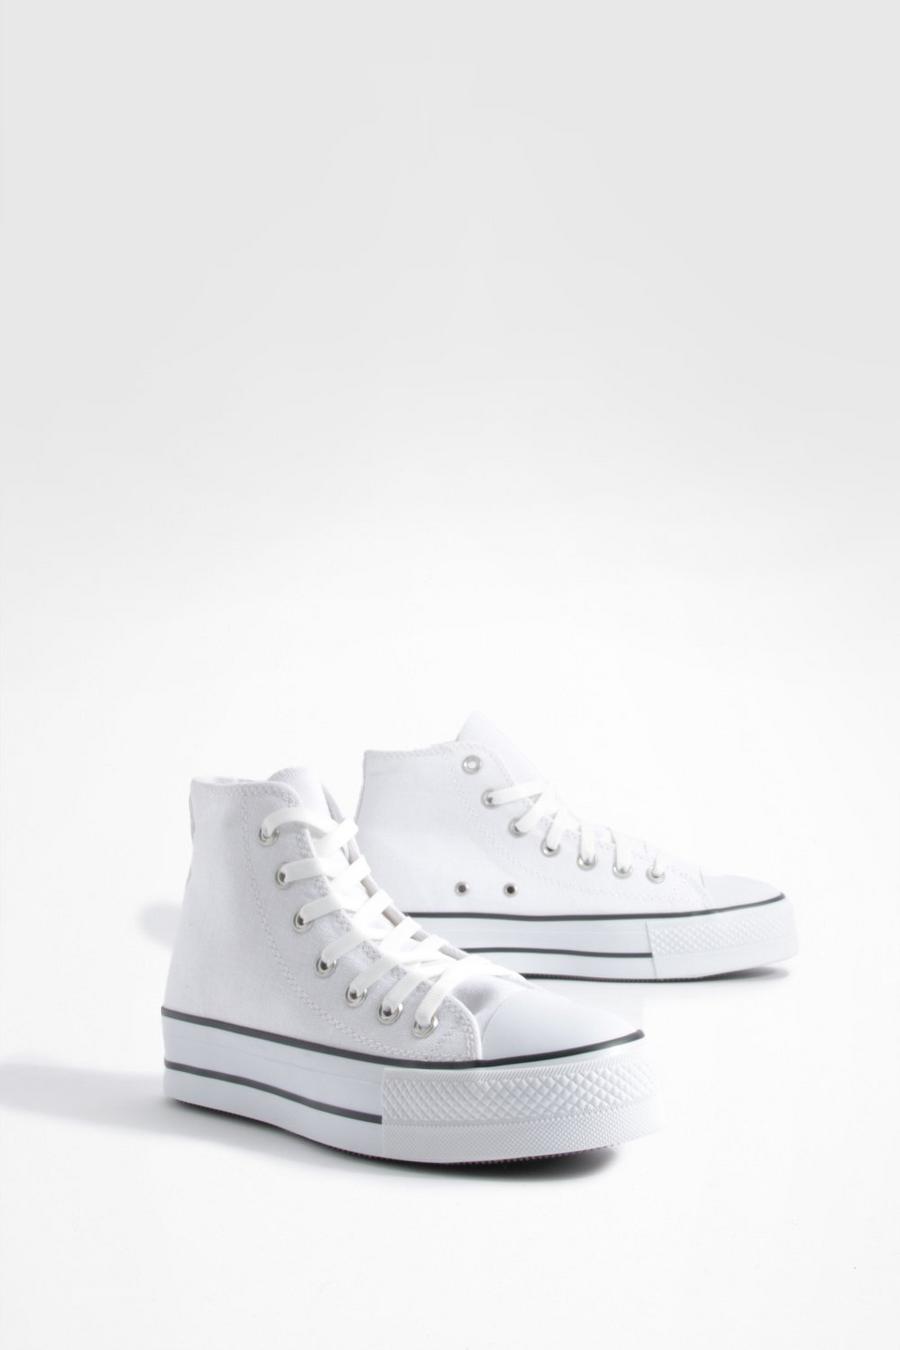 Klobige Canvas High-Top Sneaker, White weiß